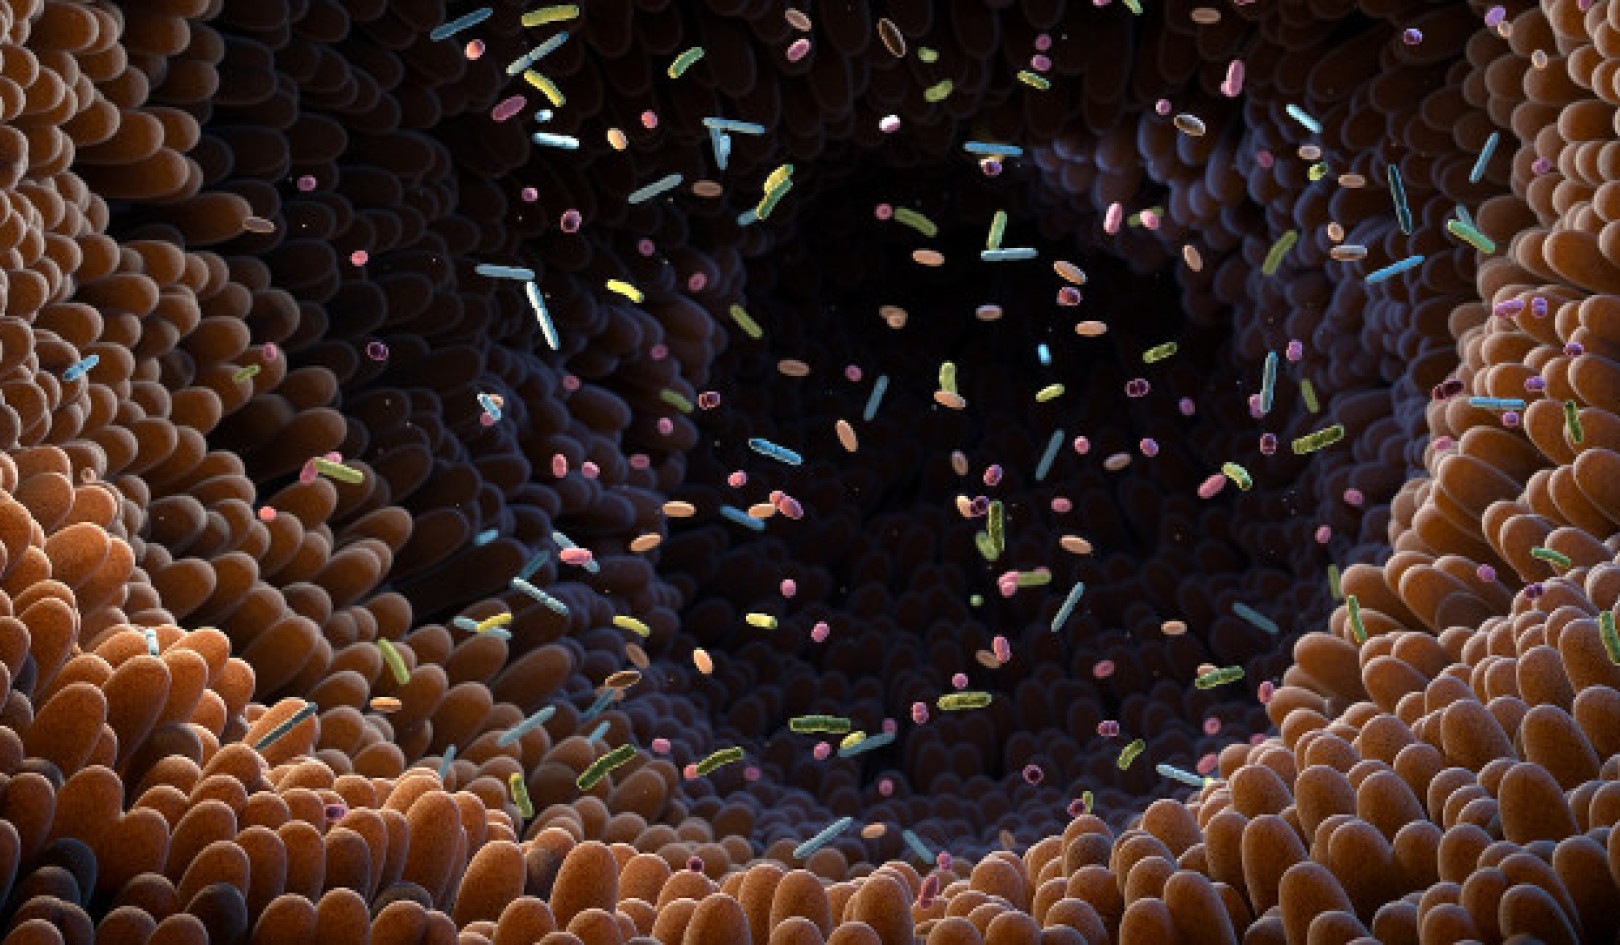 إطلاق العنان لإمكانيات ميكروبيوم الأمعاء: الآثار المترتبة على الصحة والعلاج